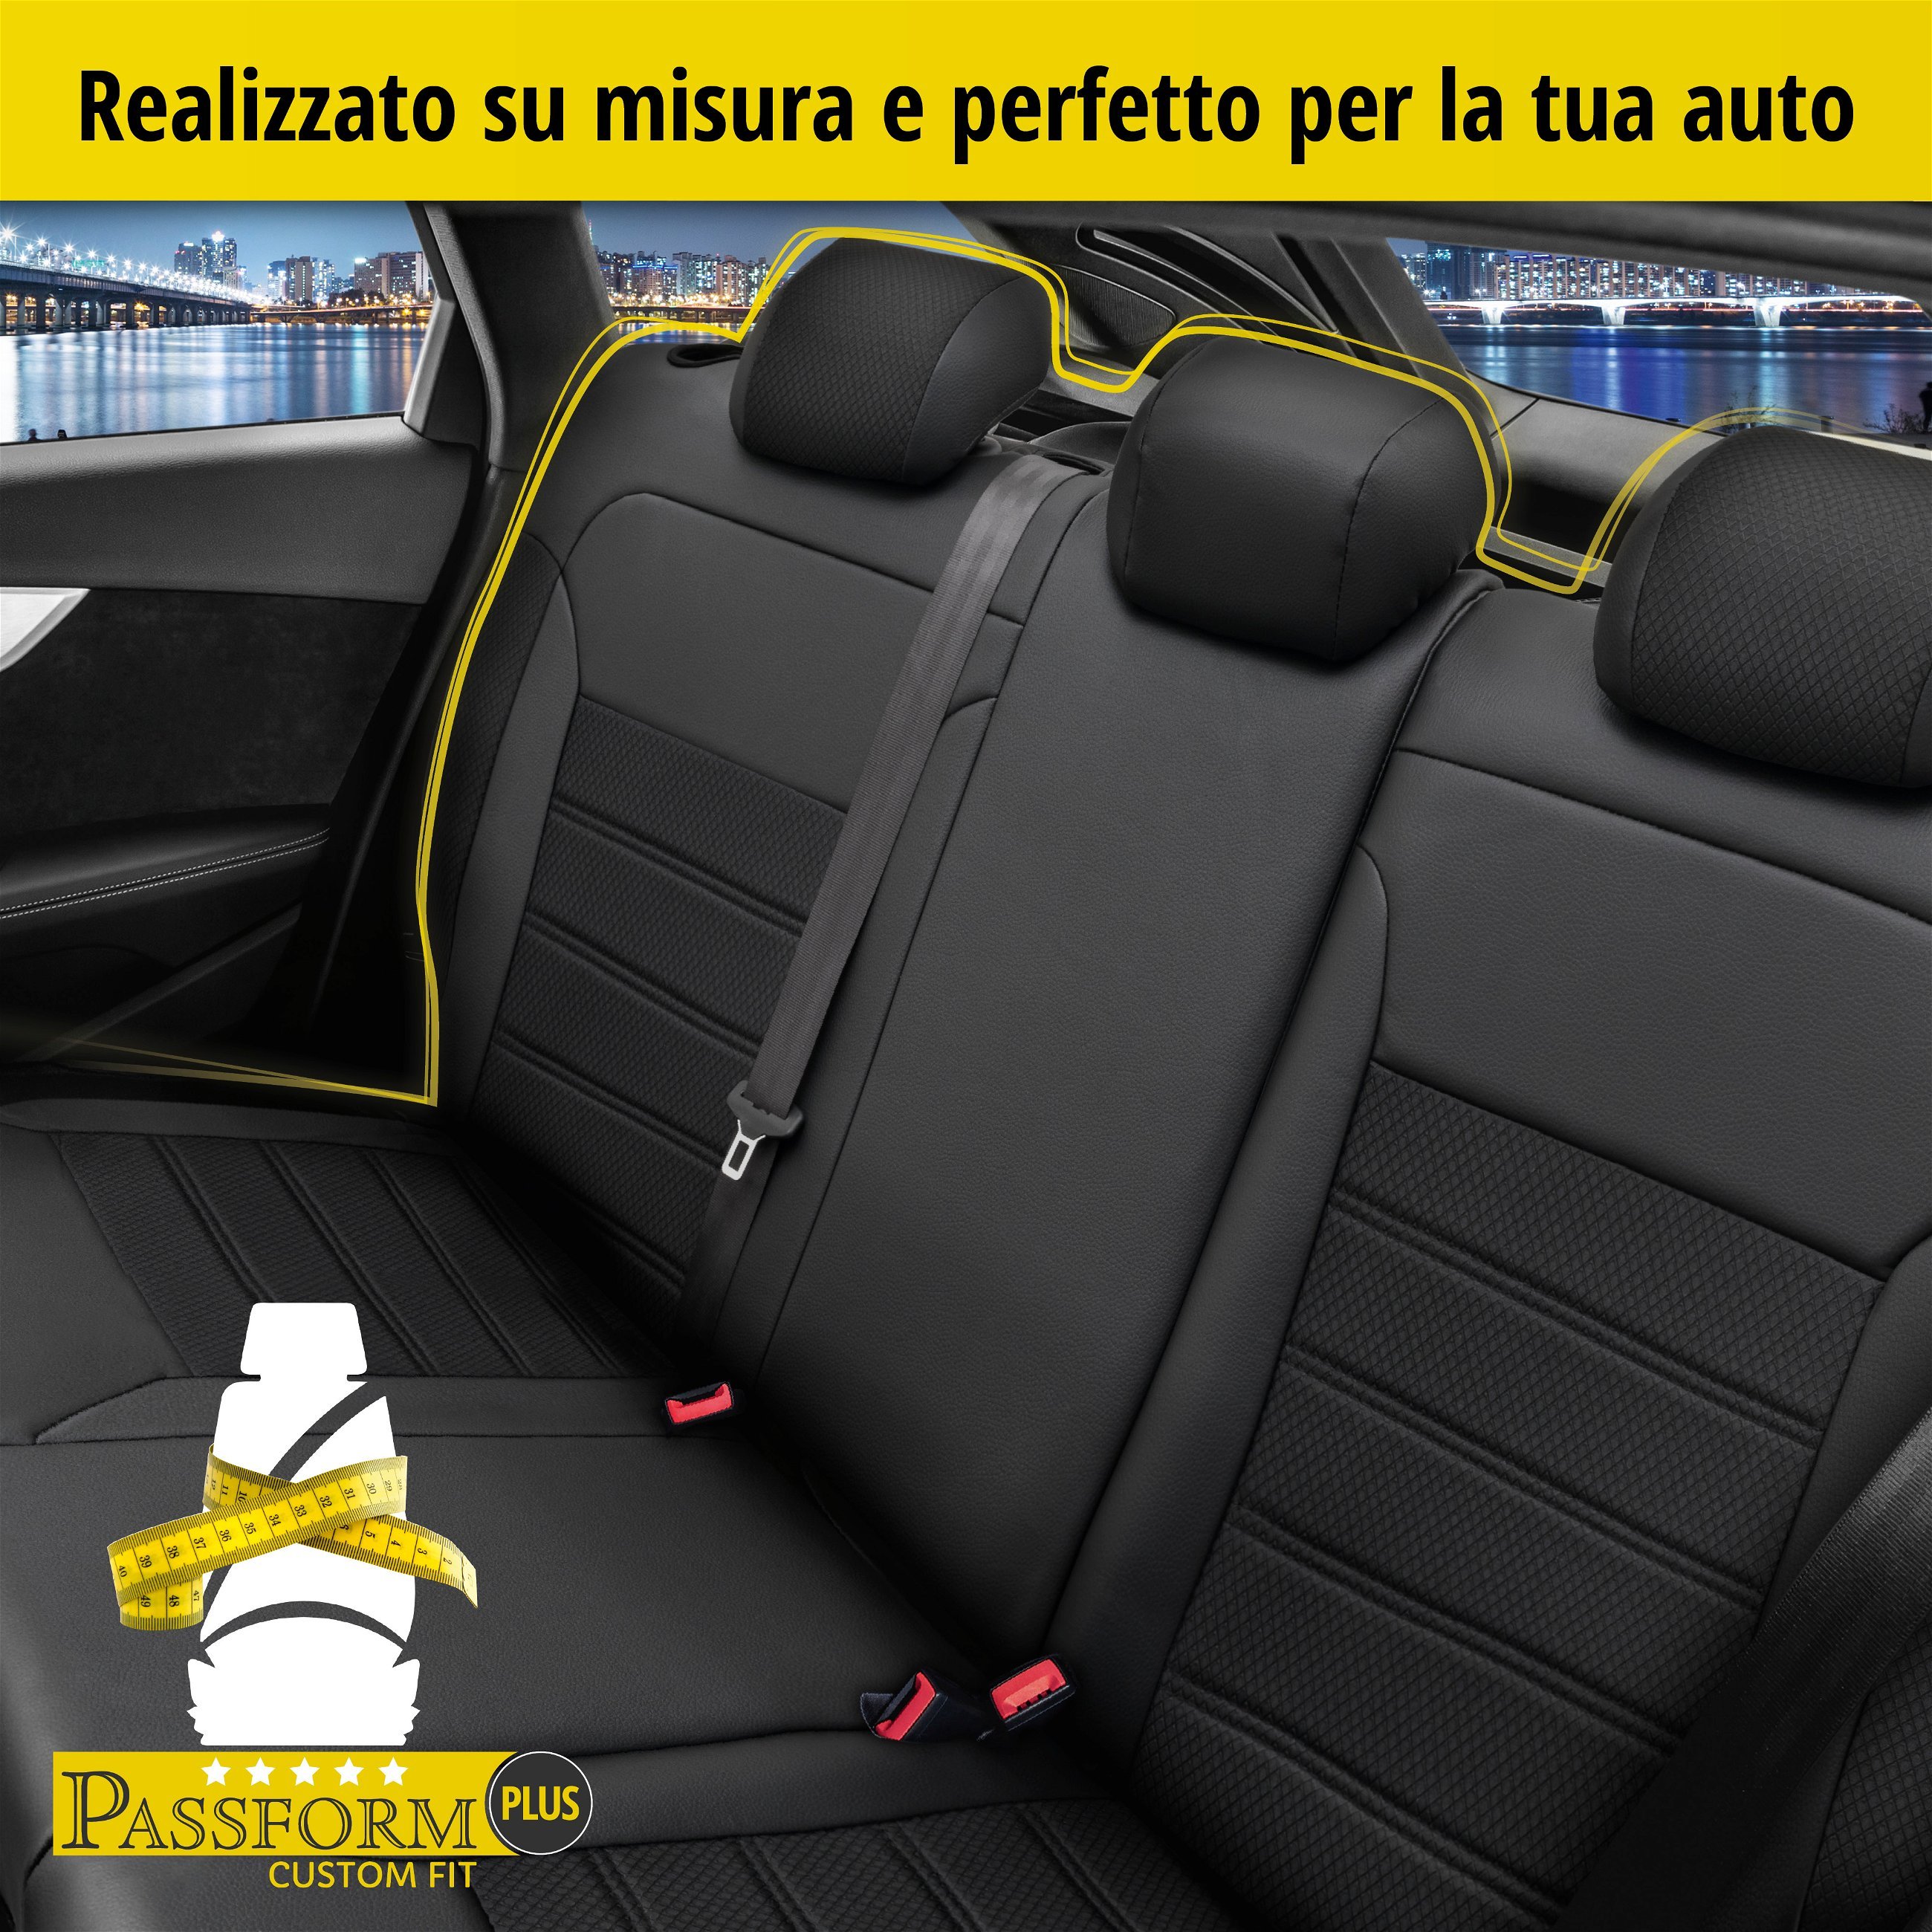 Coprisedili Aversa per VW Passat Variant (3G5, CB5) 08/2014-Oggi, 1 coprisedili posteriore per sedili normali